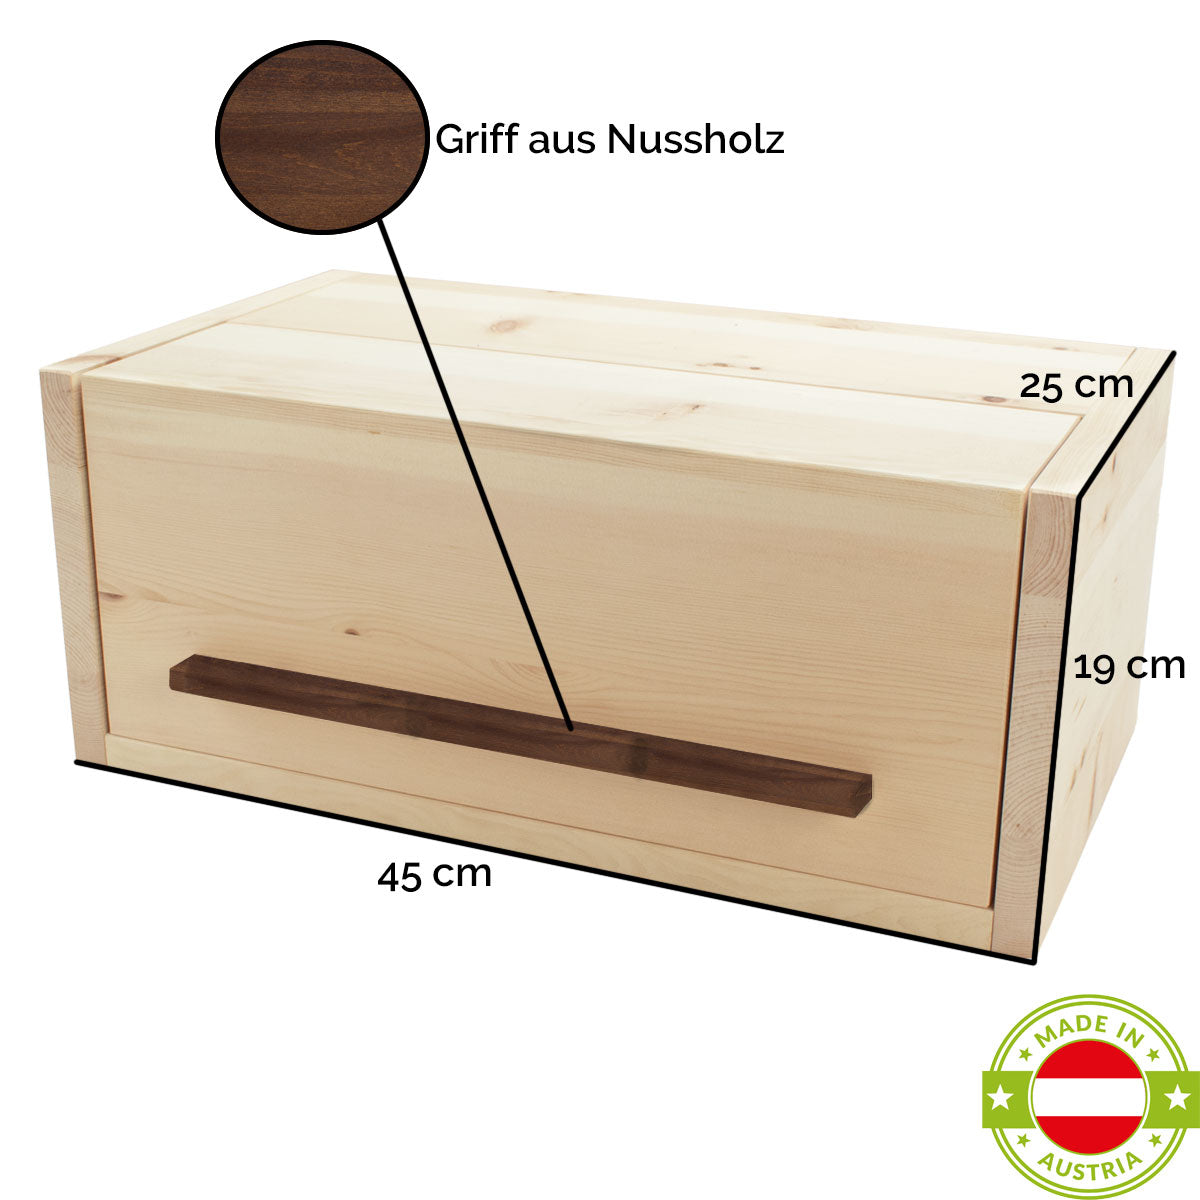 Brotkasten aus Zirbenholz | mit Nussgriff und Klappdeckel | 45 x 25 x 19 cm | inkl. Zirbenholz-Gitter |  Handwerk aus Österreich